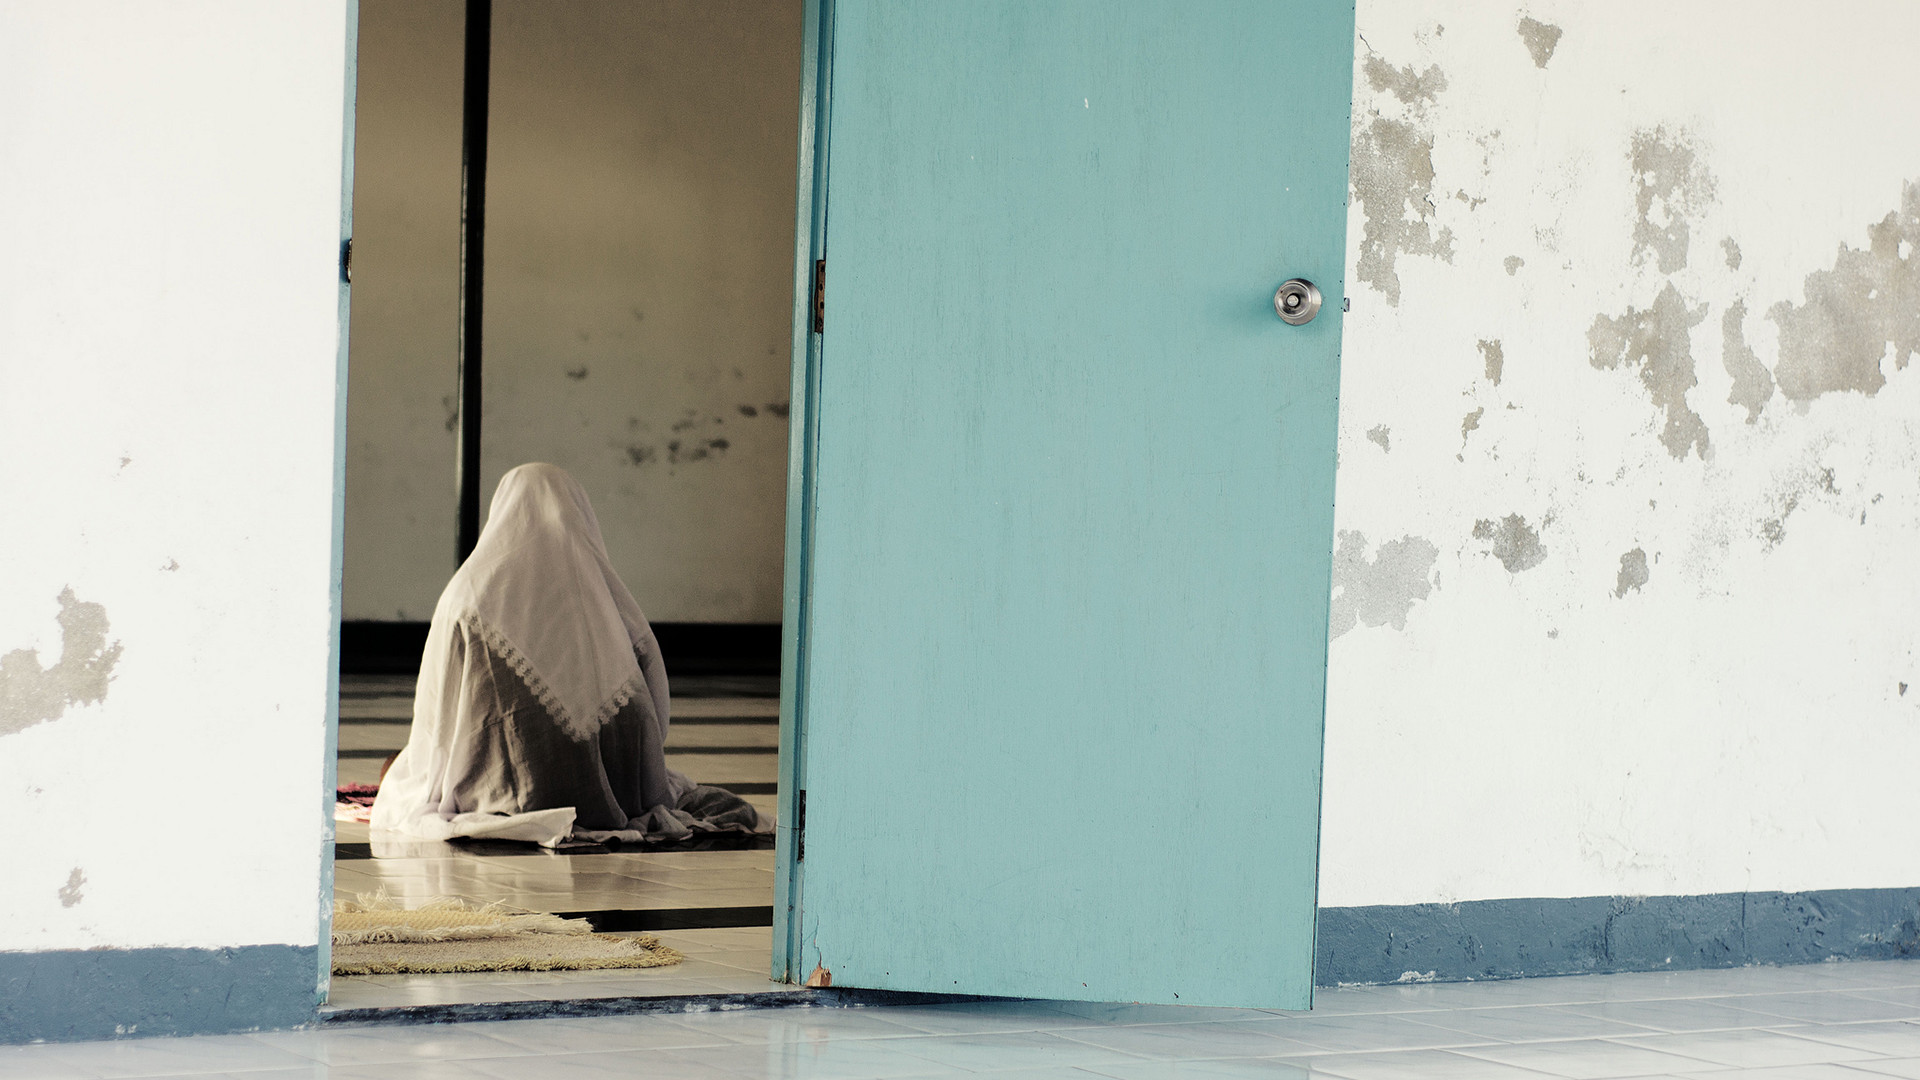 L'EI a commis des agressions sexuelles et d'autres crimes atroces à l'encontre de femmes et de filles yézidies (Photo: flickr/haniamir/CC BY-NC-ND 2.0)